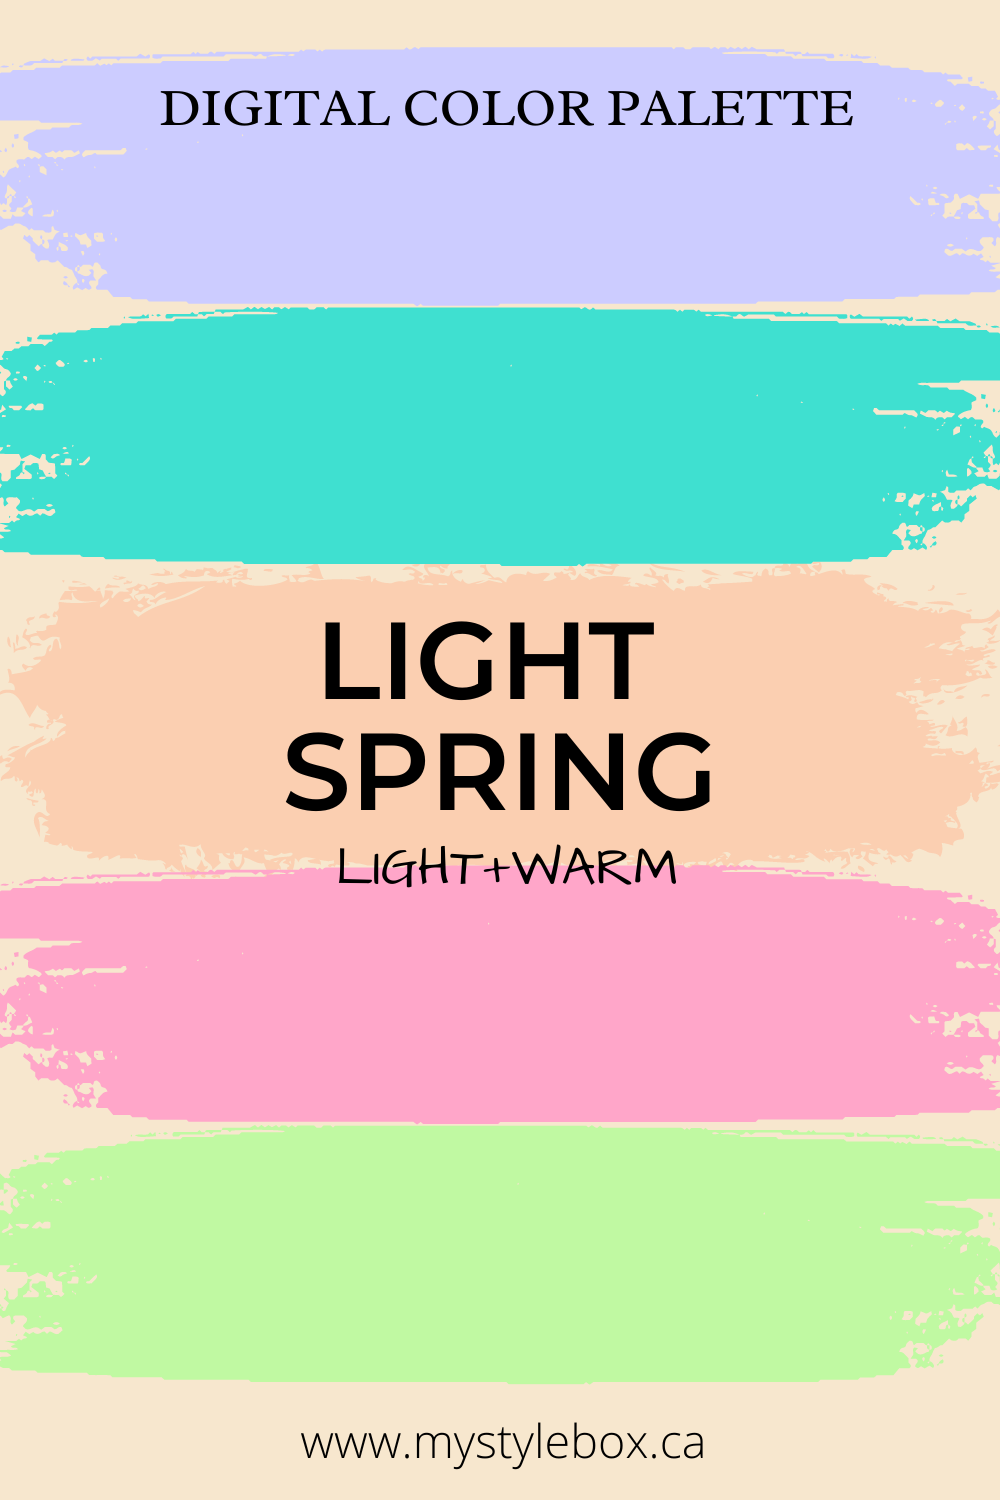 Light Spring Digital Color Palette